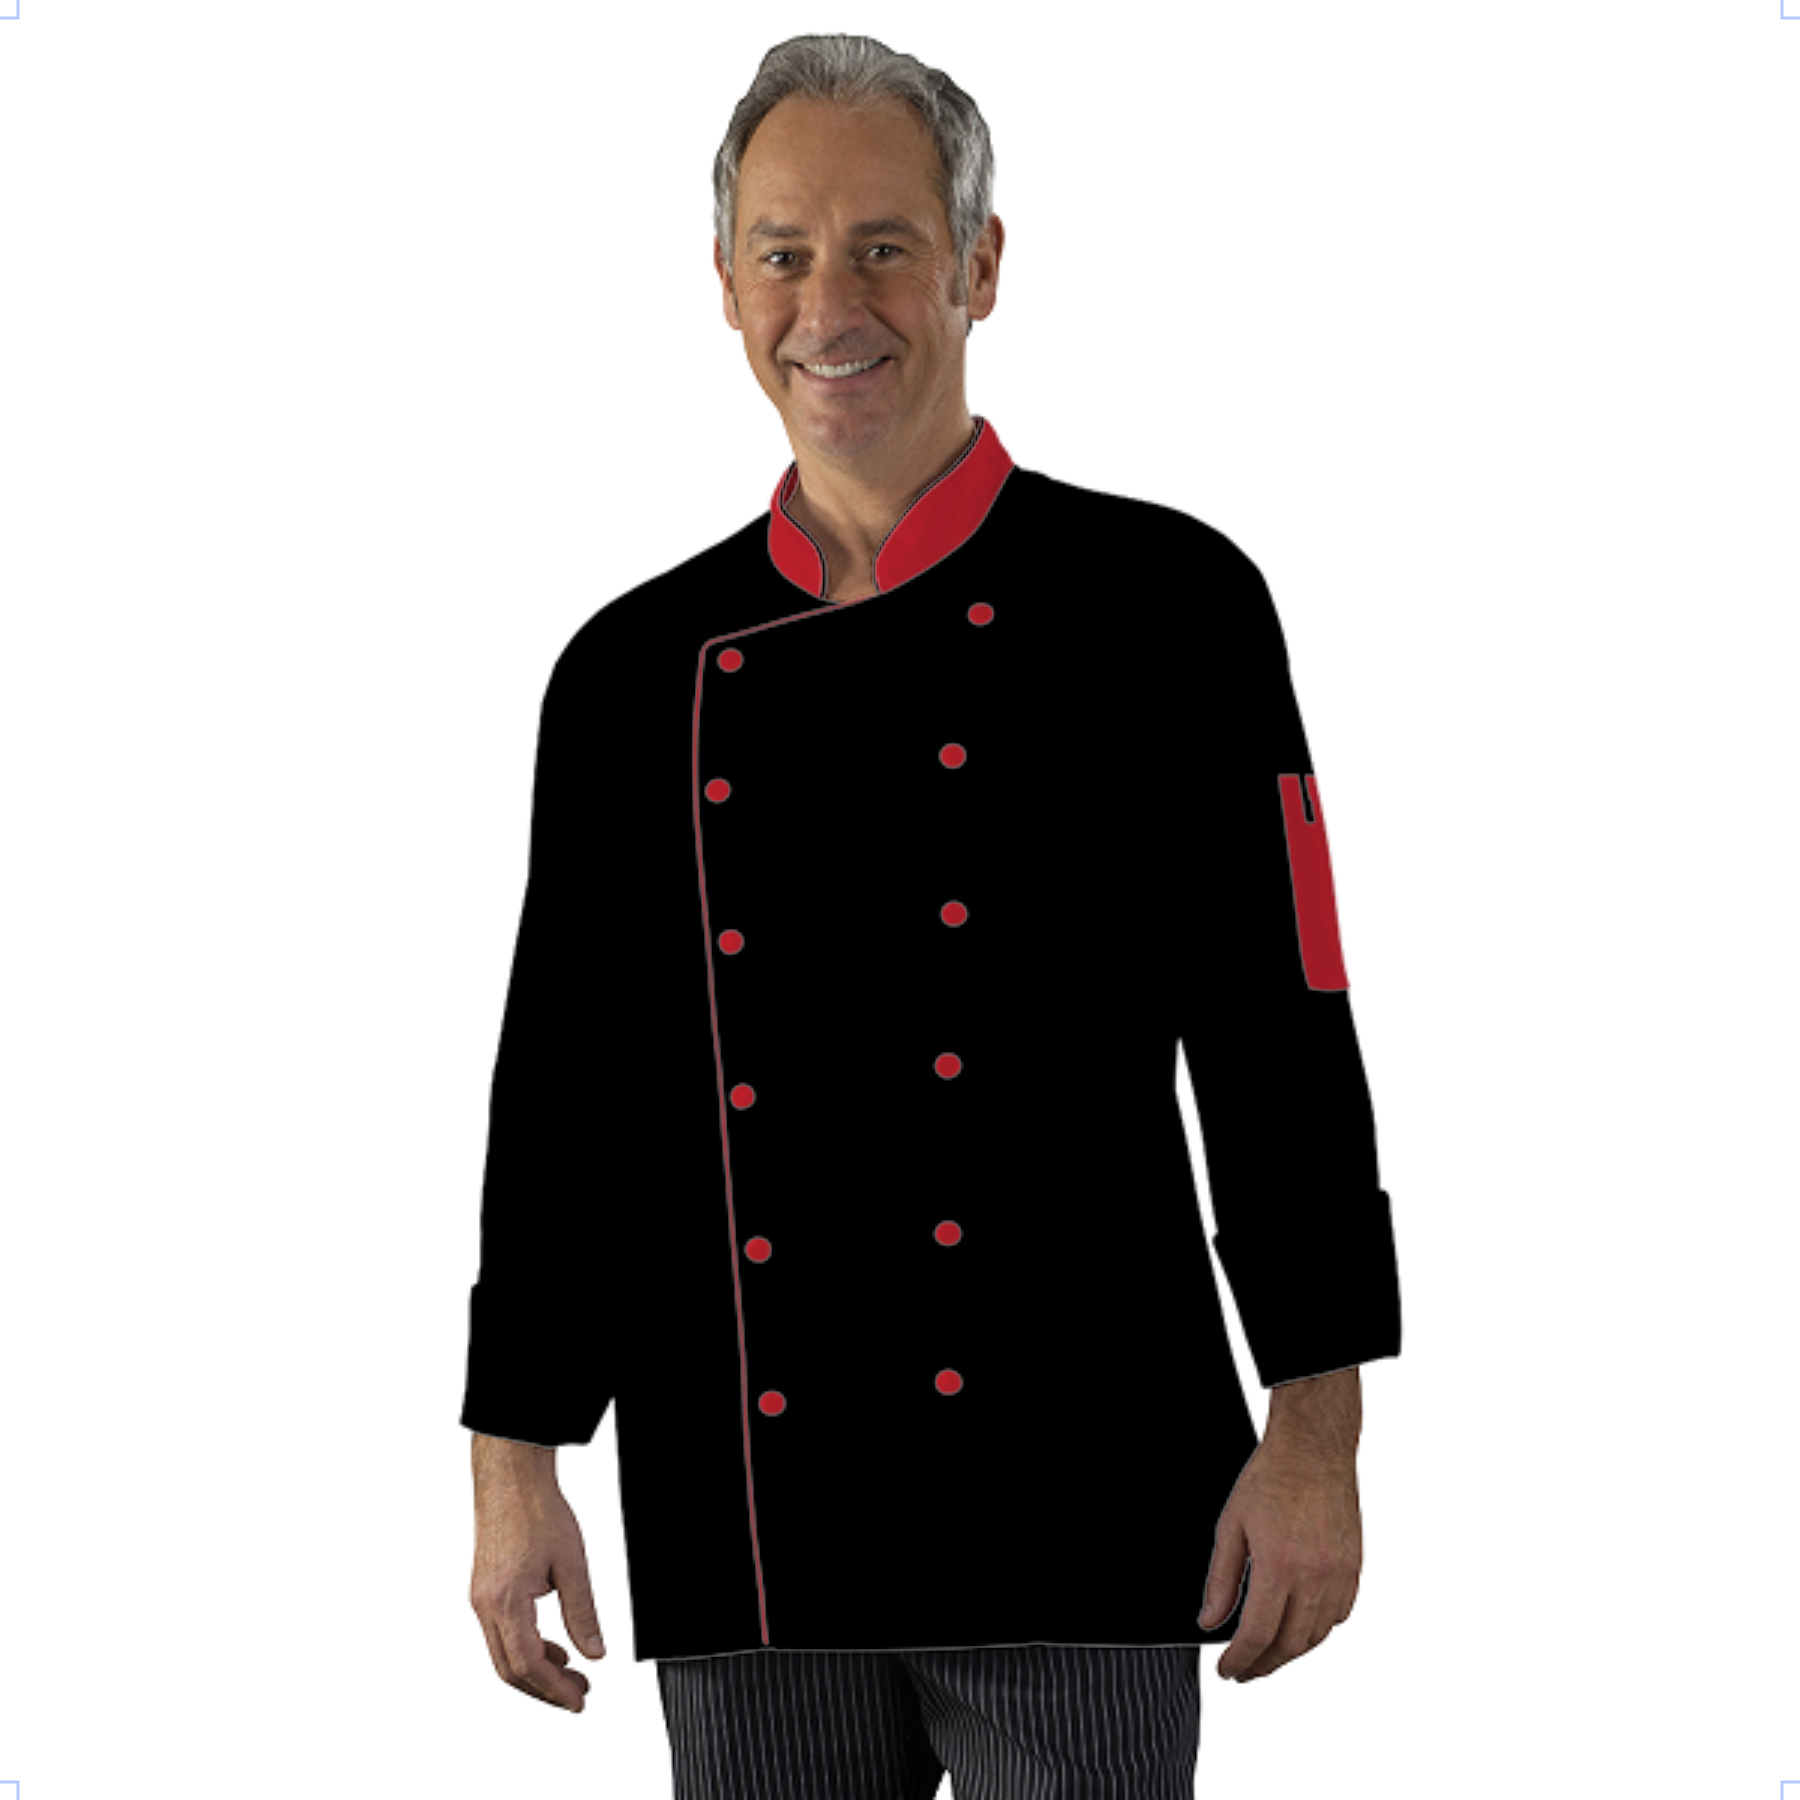 veste-de-cuisine-homme-femme-a-personnaliser acheté - par Christophe - le 28-07-2019